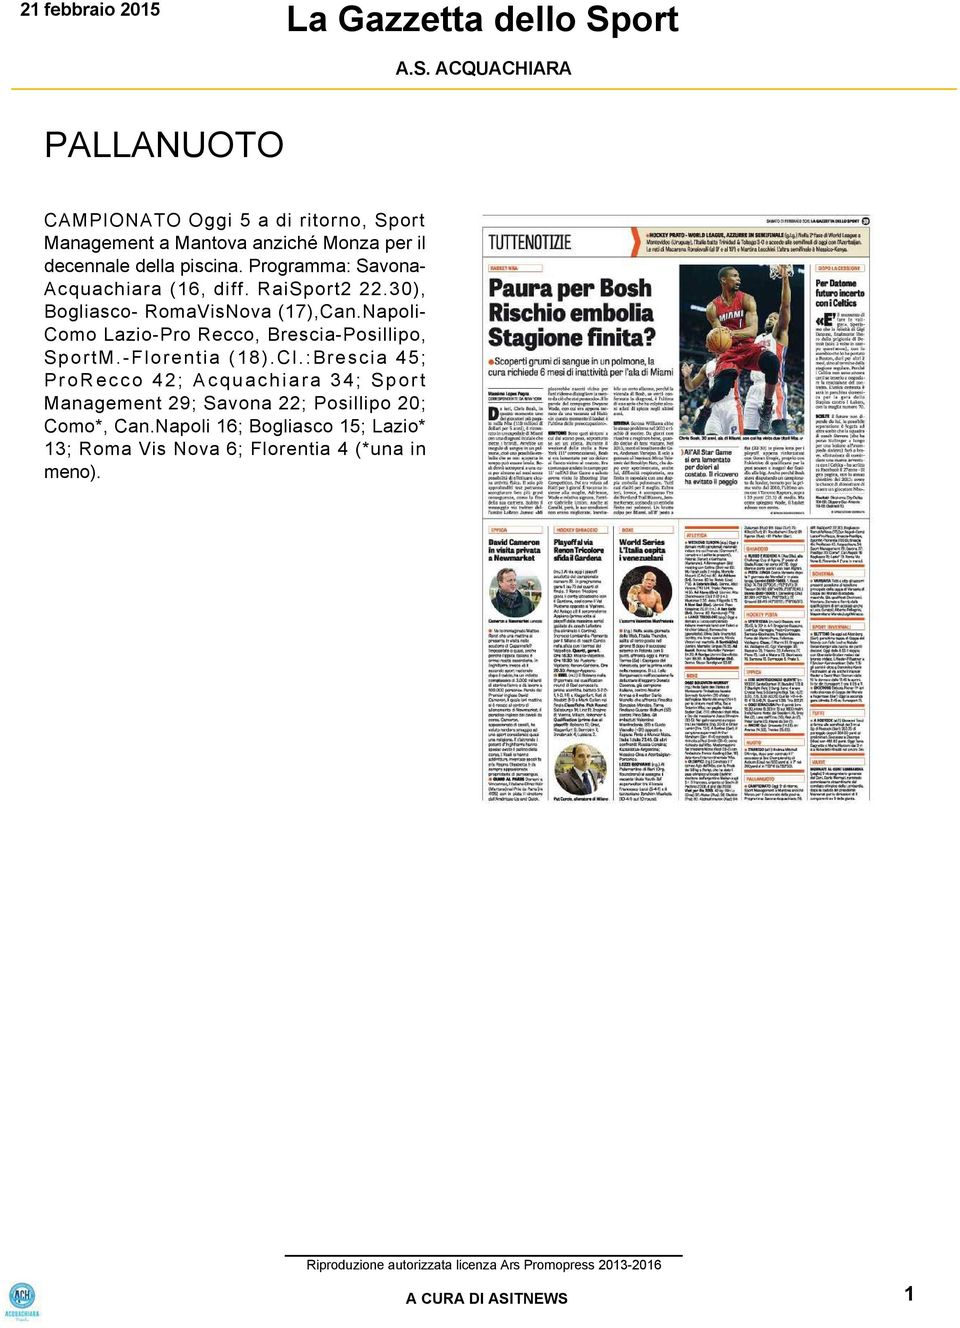 Napoli Como Lazio Pro Recco, Brescia Posillipo, SportM. Florentia (18).Cl.